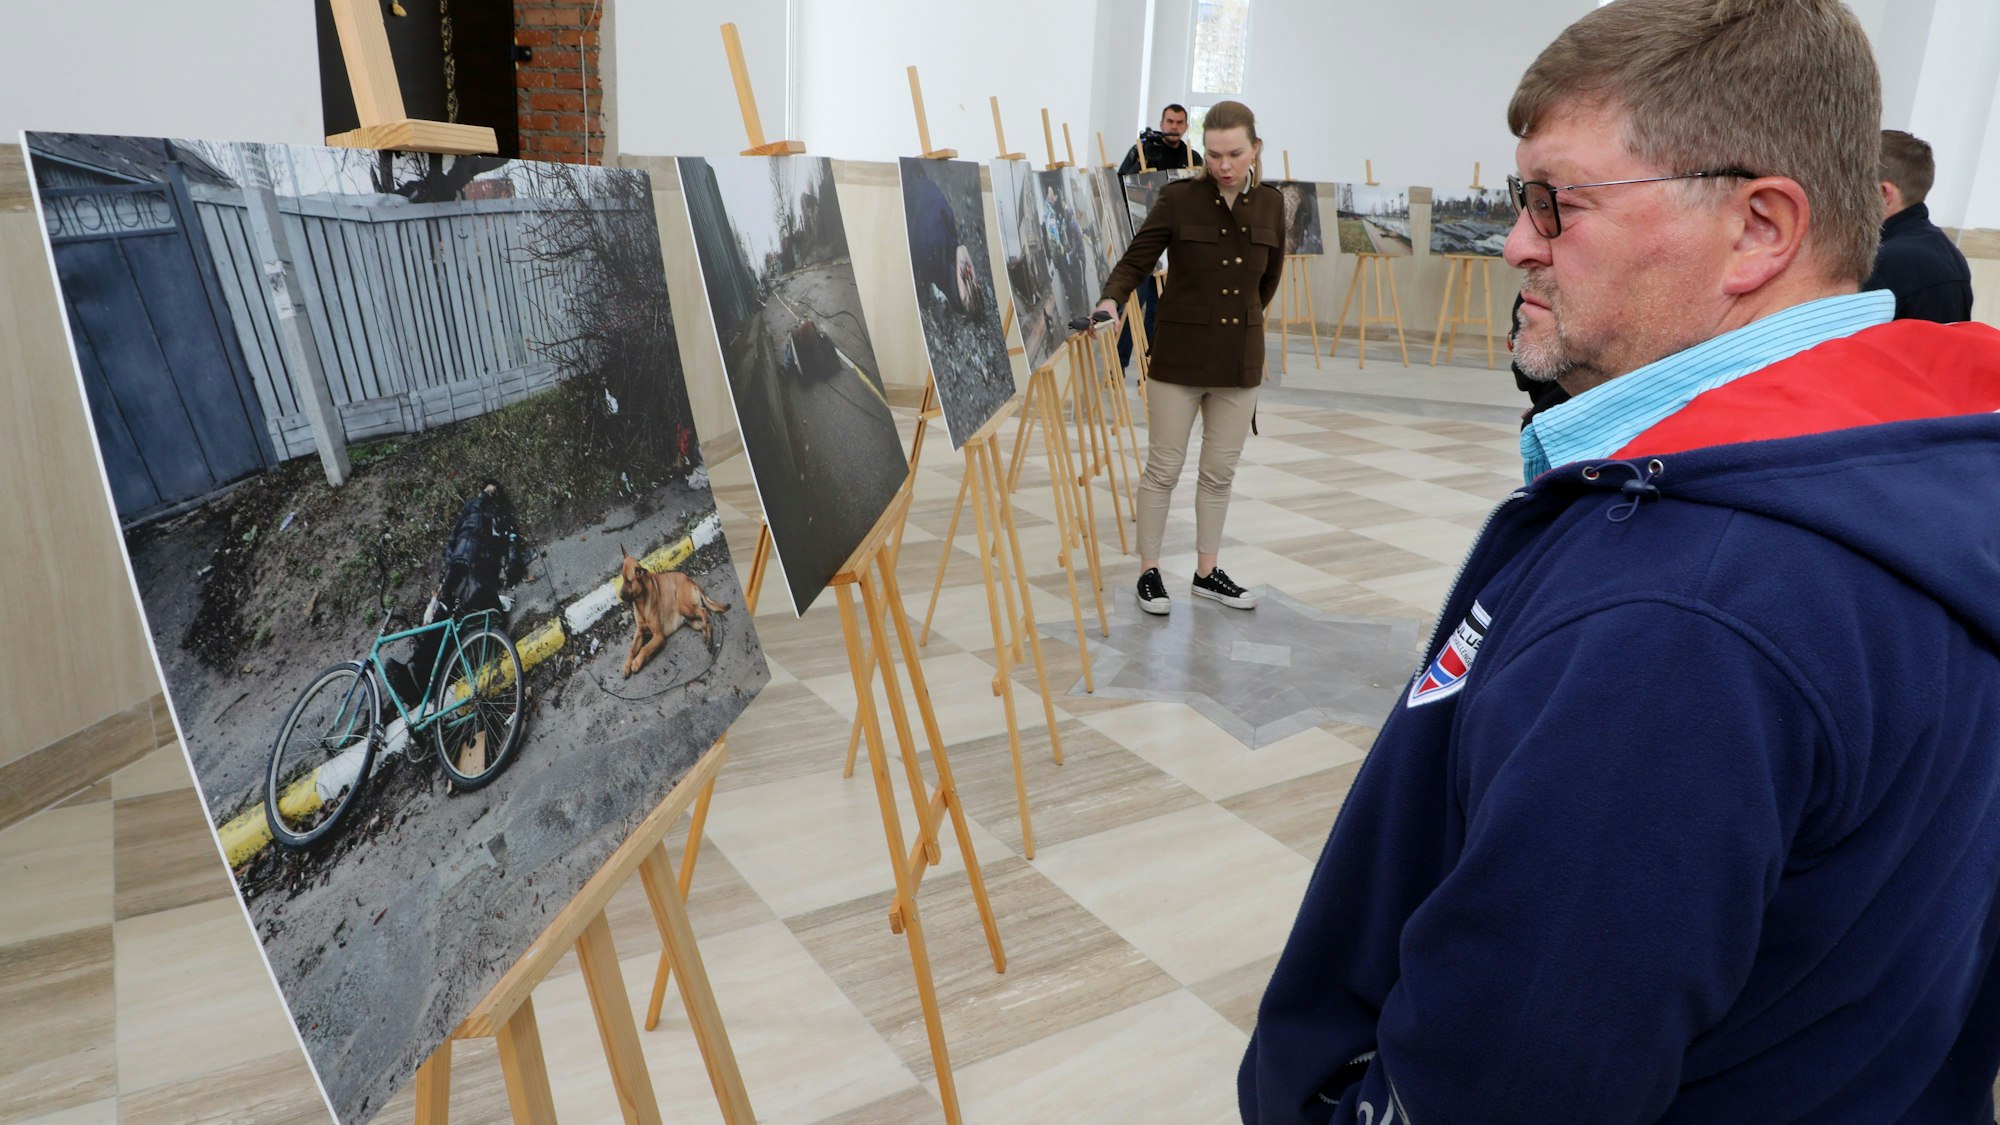 Ein Mann betrachtet ein Ausstellungsbild, auf dem ein erschossener Fahrradfaher in Butscha zu sehen ist, neben dem ein Hund auf der Straße sitzt.